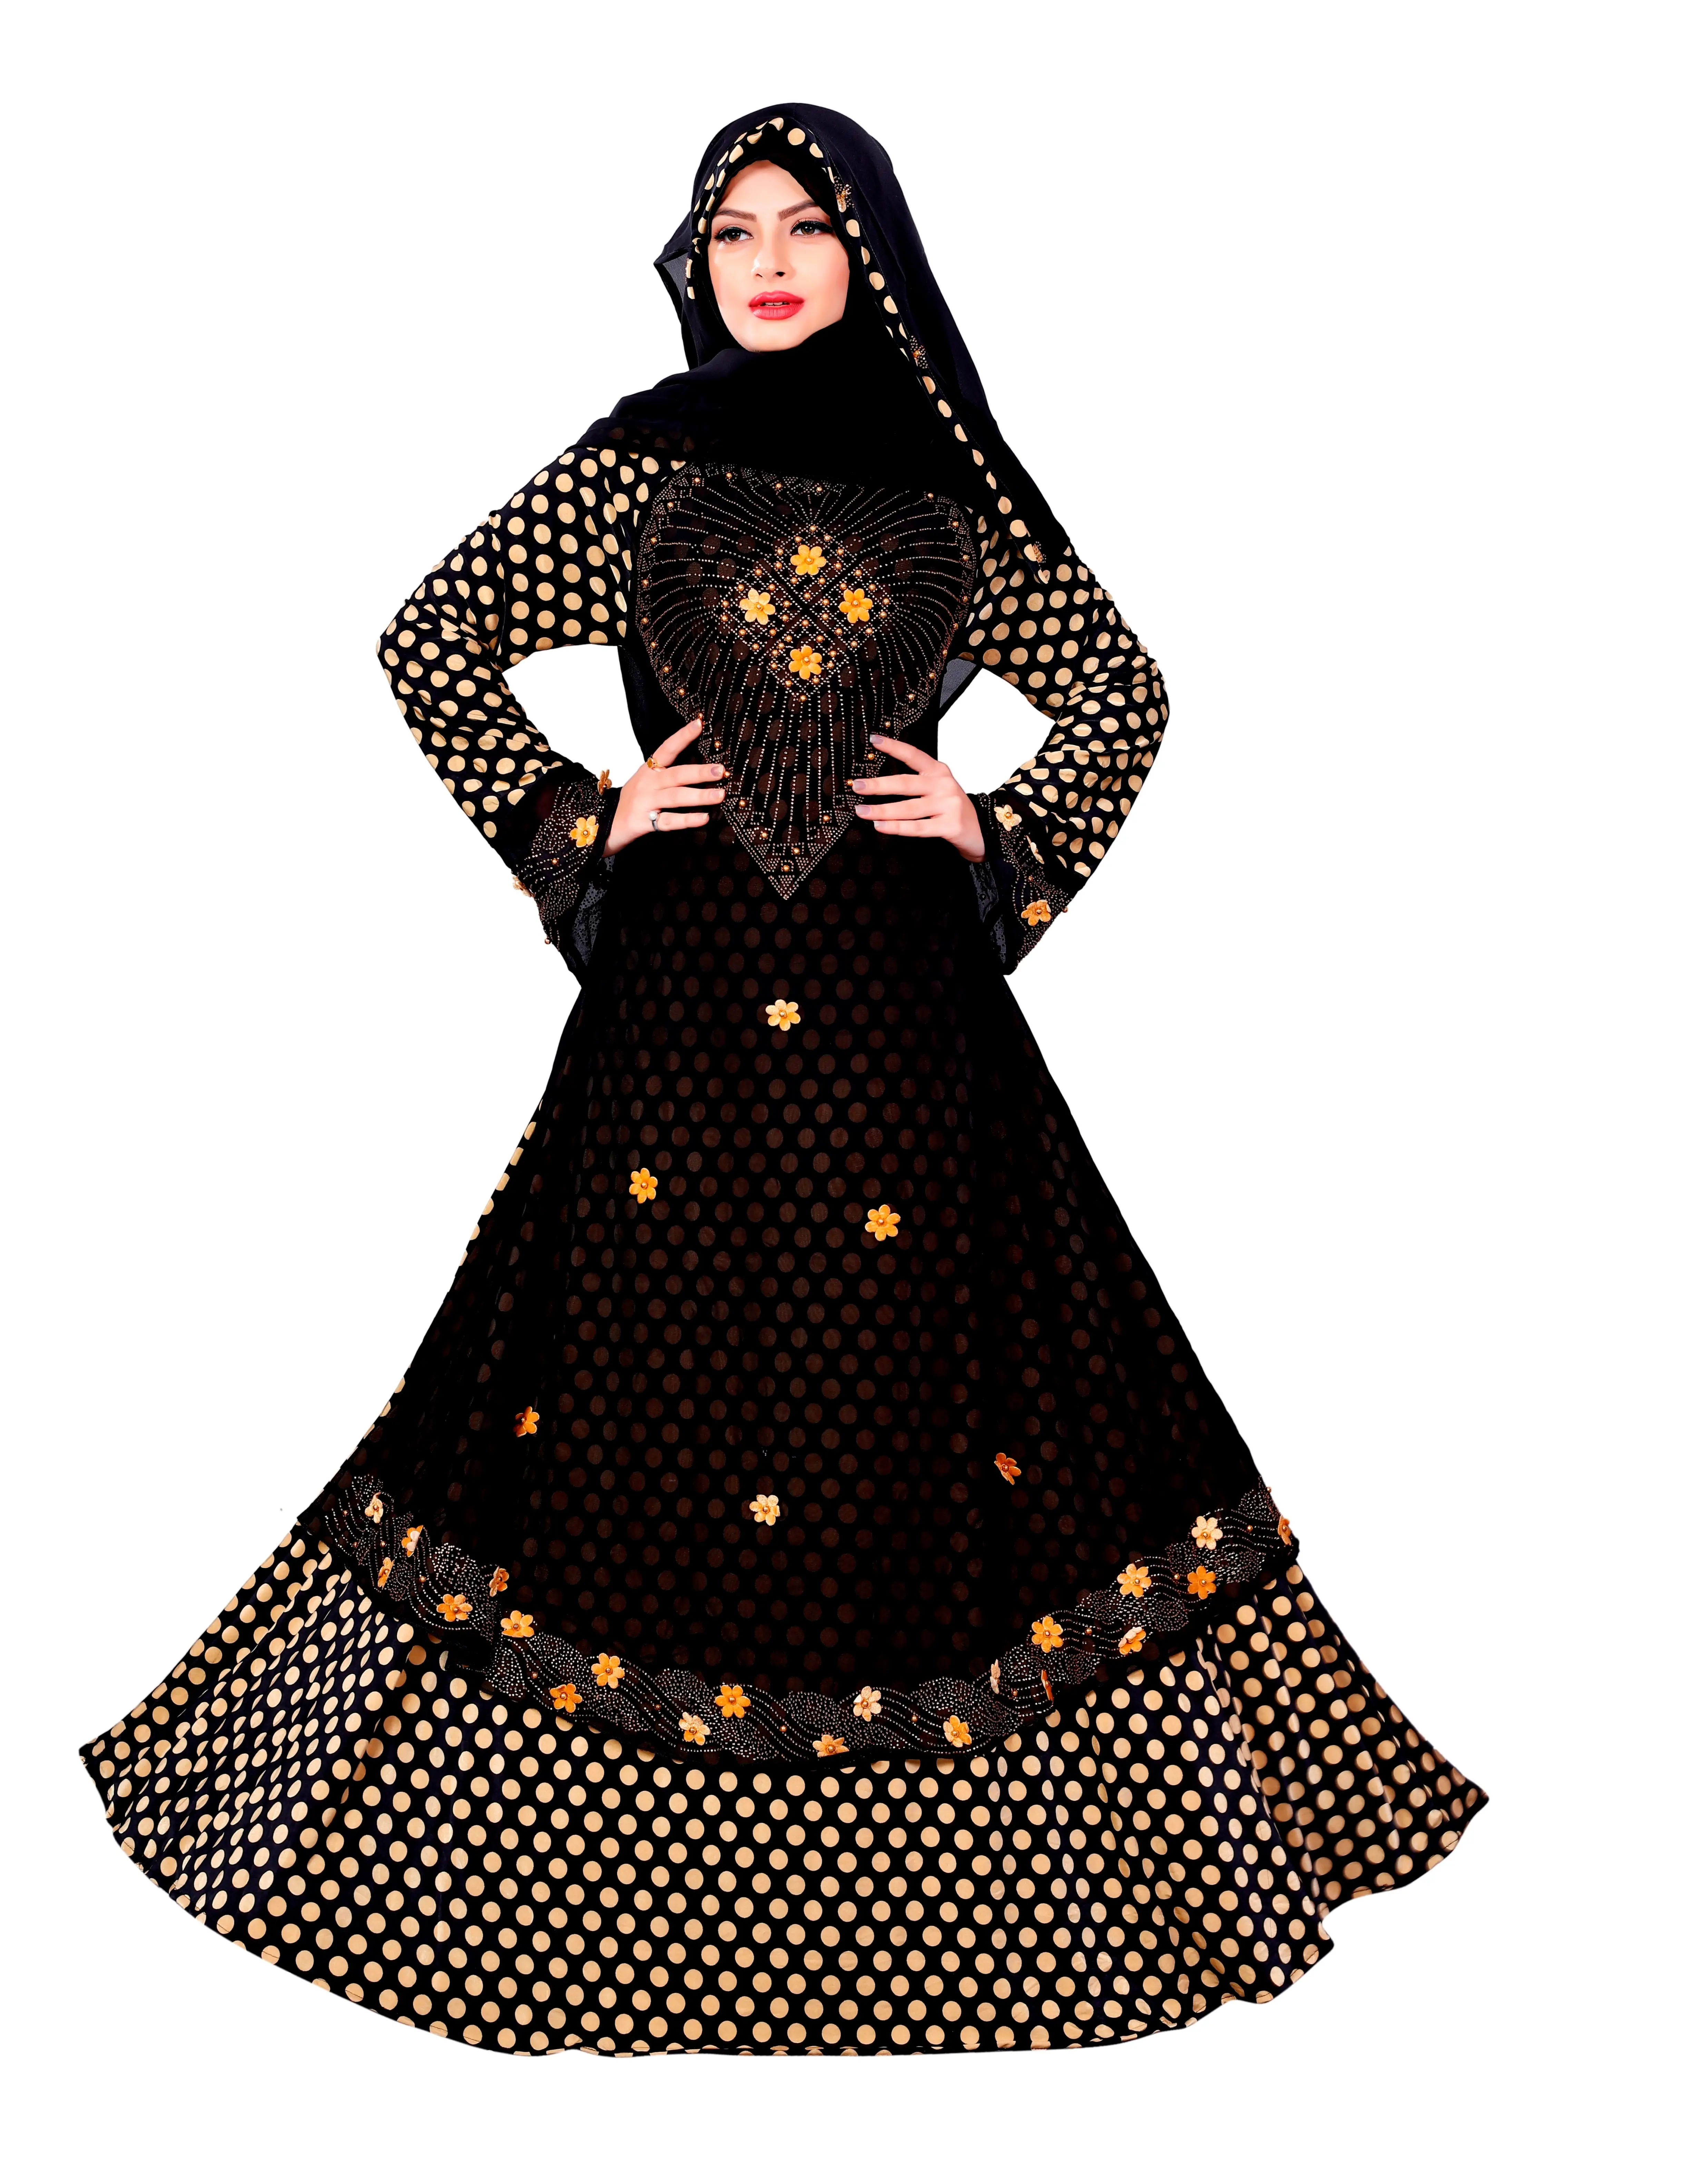 In Kiểu Chấm Bi Lykra + Chiffon Abaya Burqa Với Kiểu Thắt Lưng Và Khăn Hijab